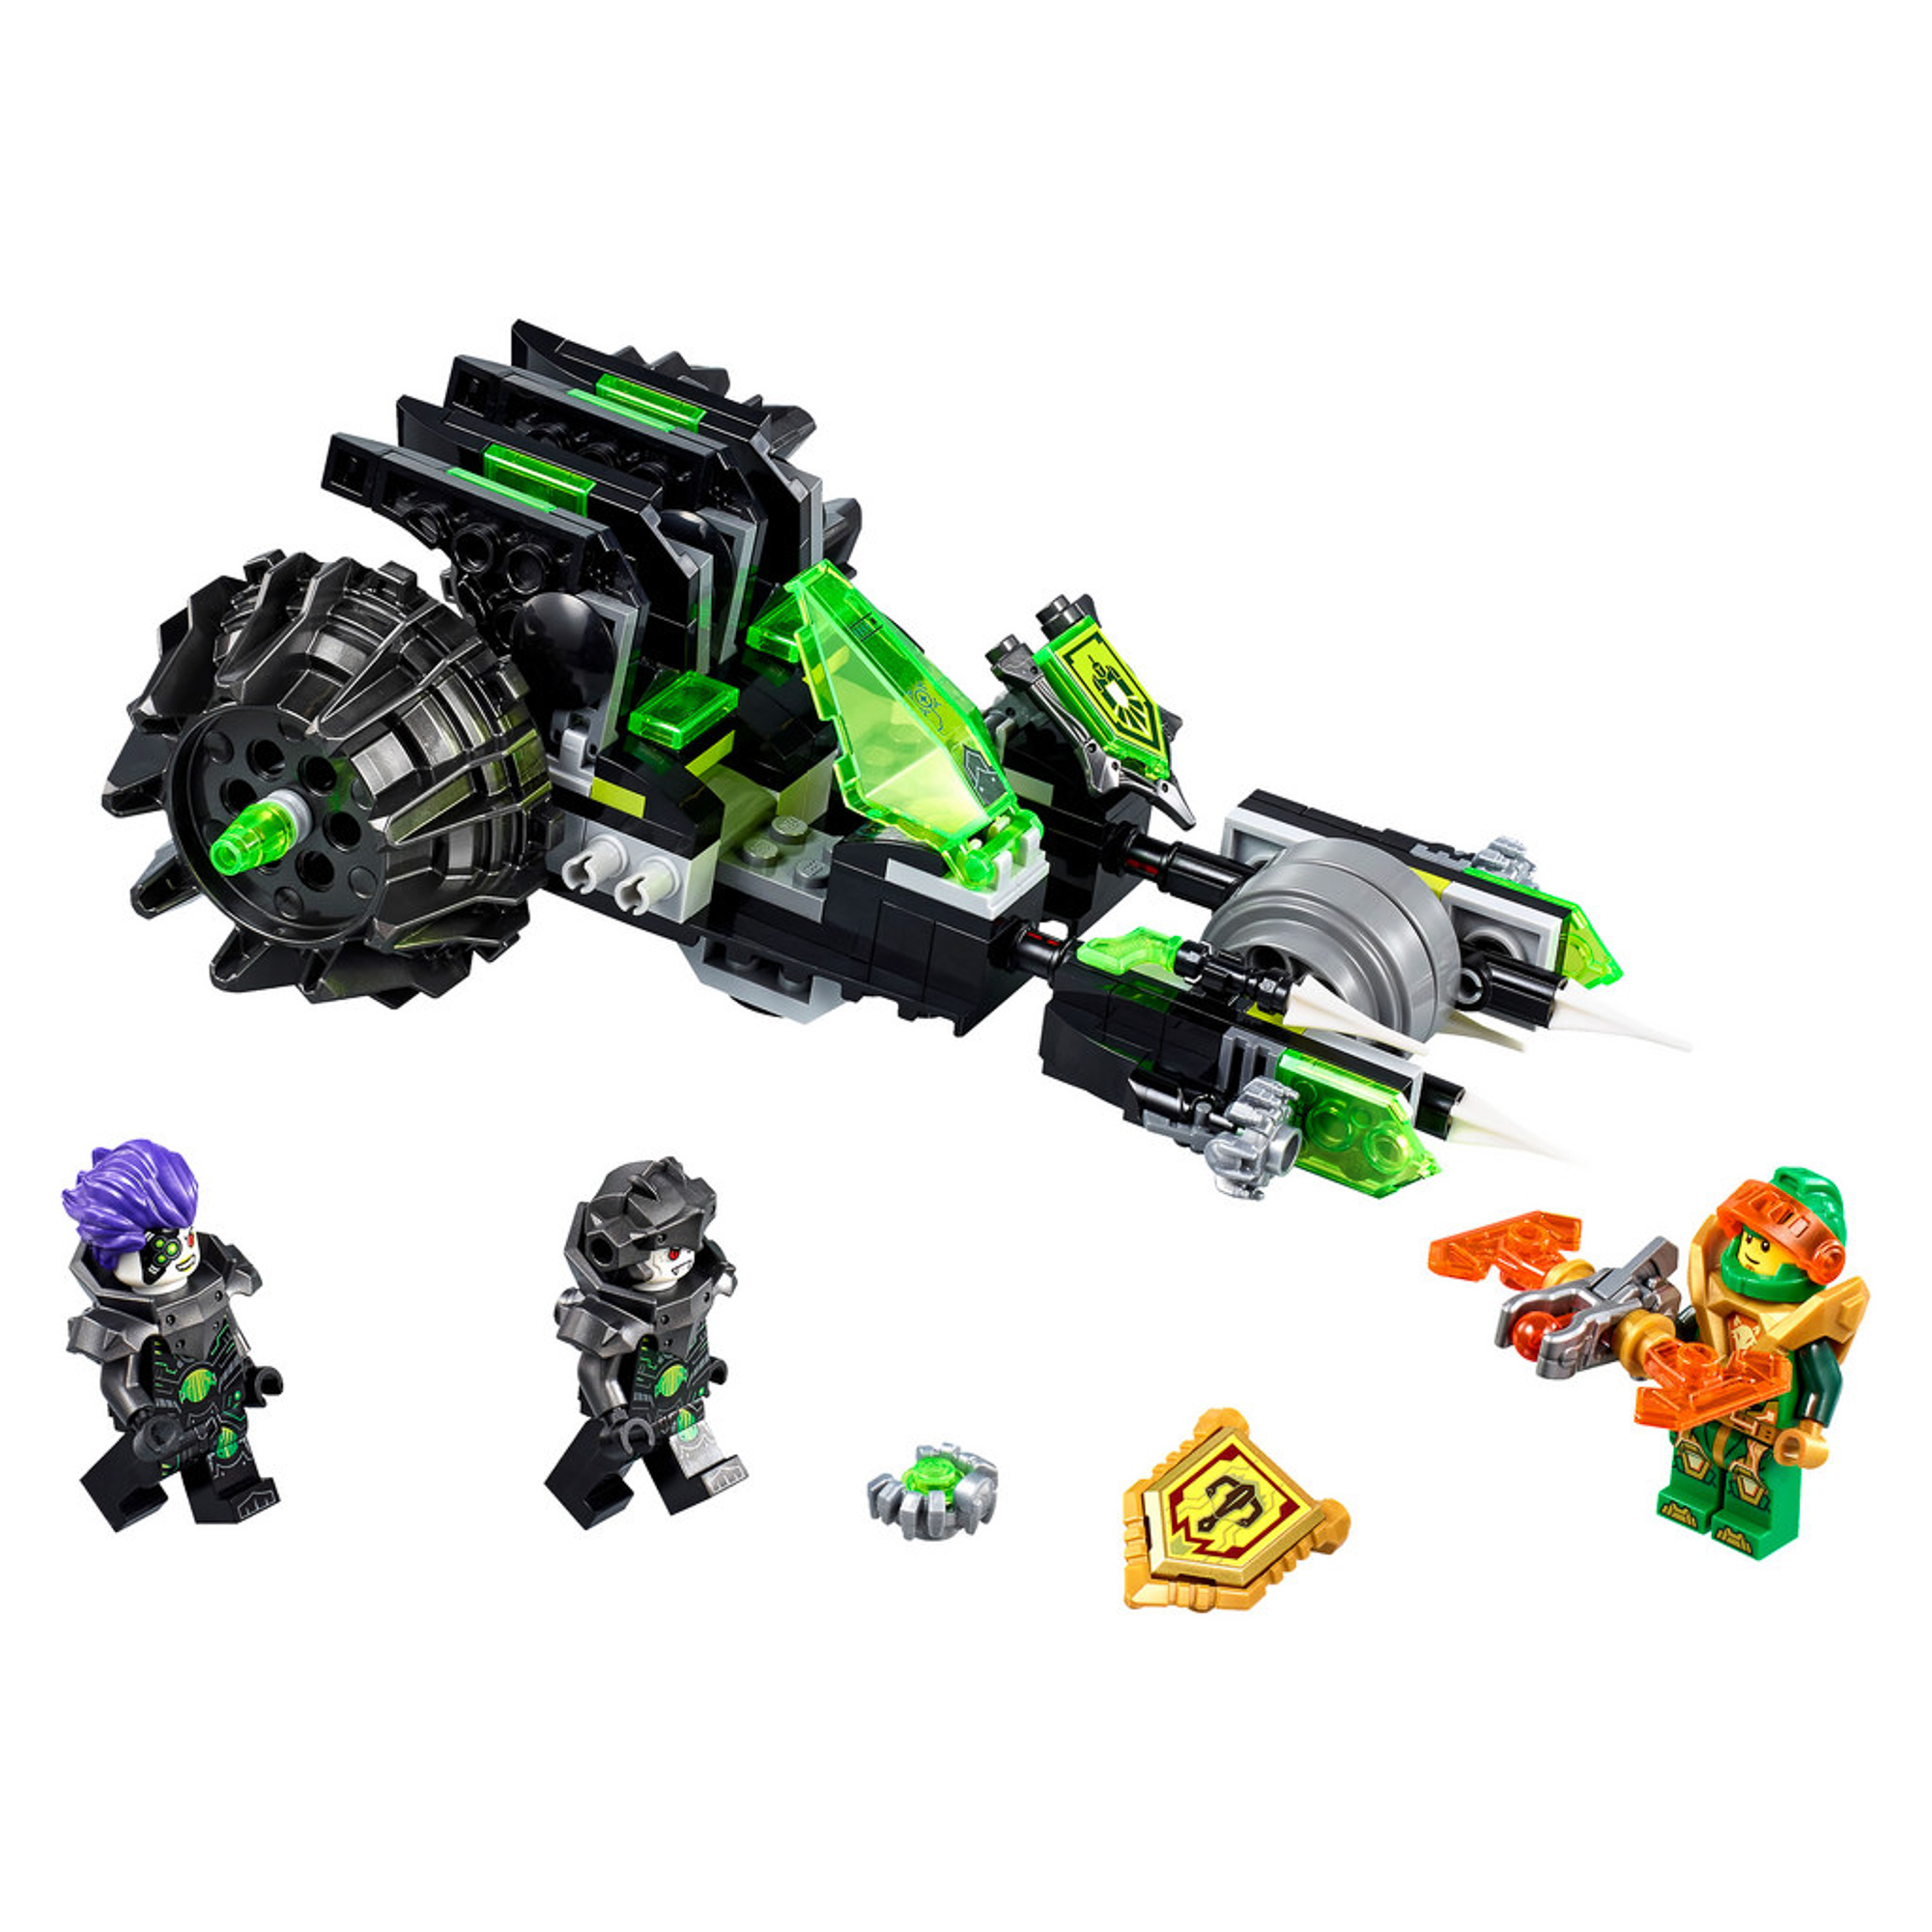 Игрушка нексо боевая машина близнецов Lego 72002